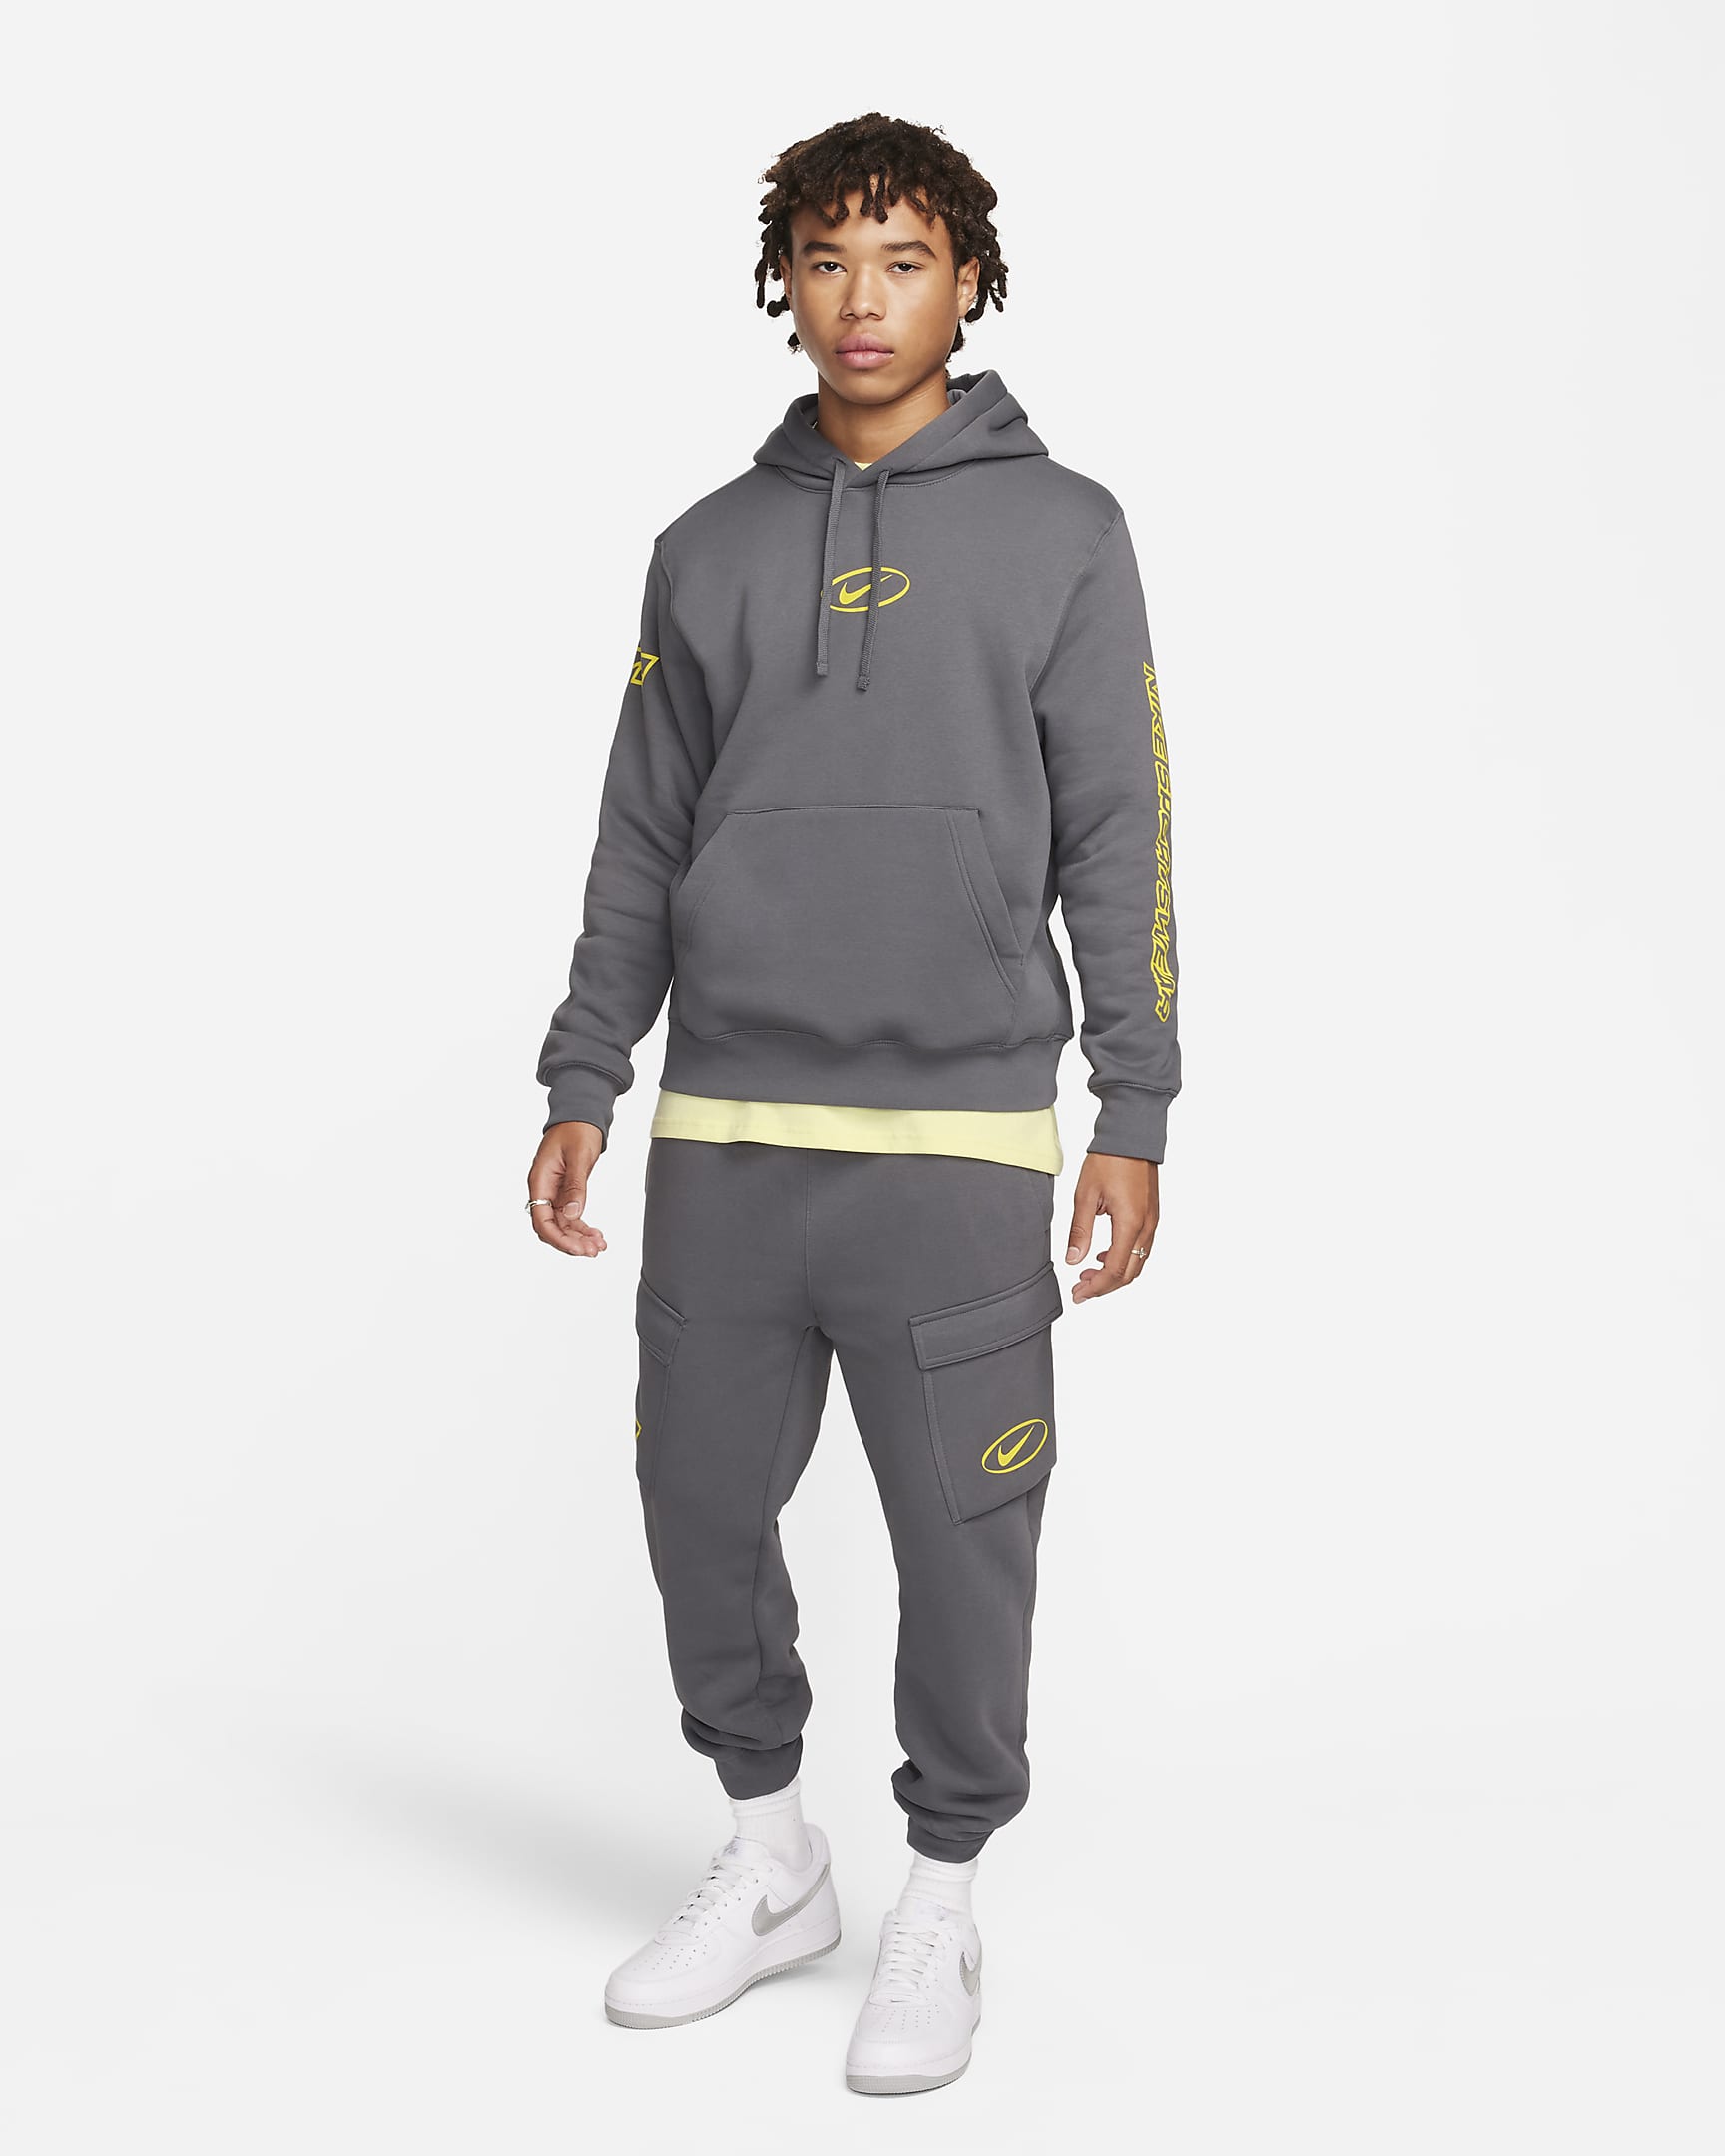 Nike Sportswear Men's Pullover Hoodie - Dark Grey